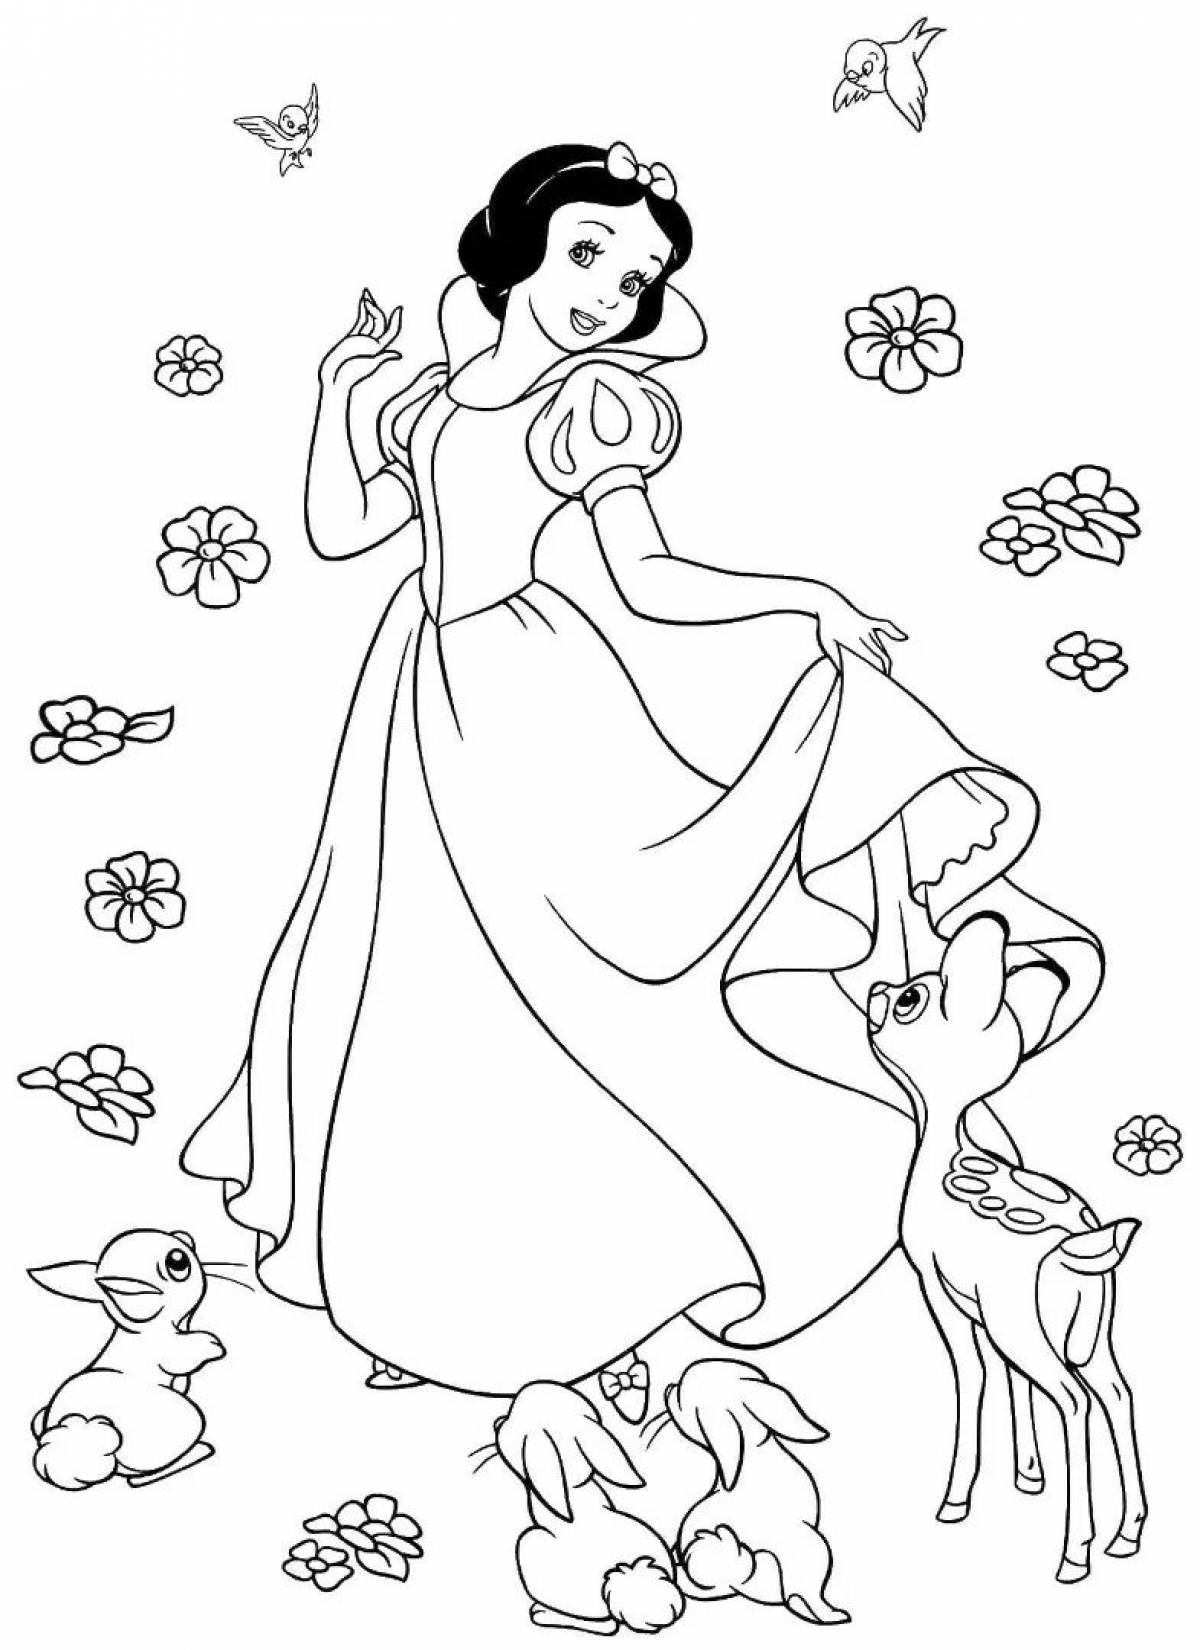 Serendipitous cartoon princess coloring book